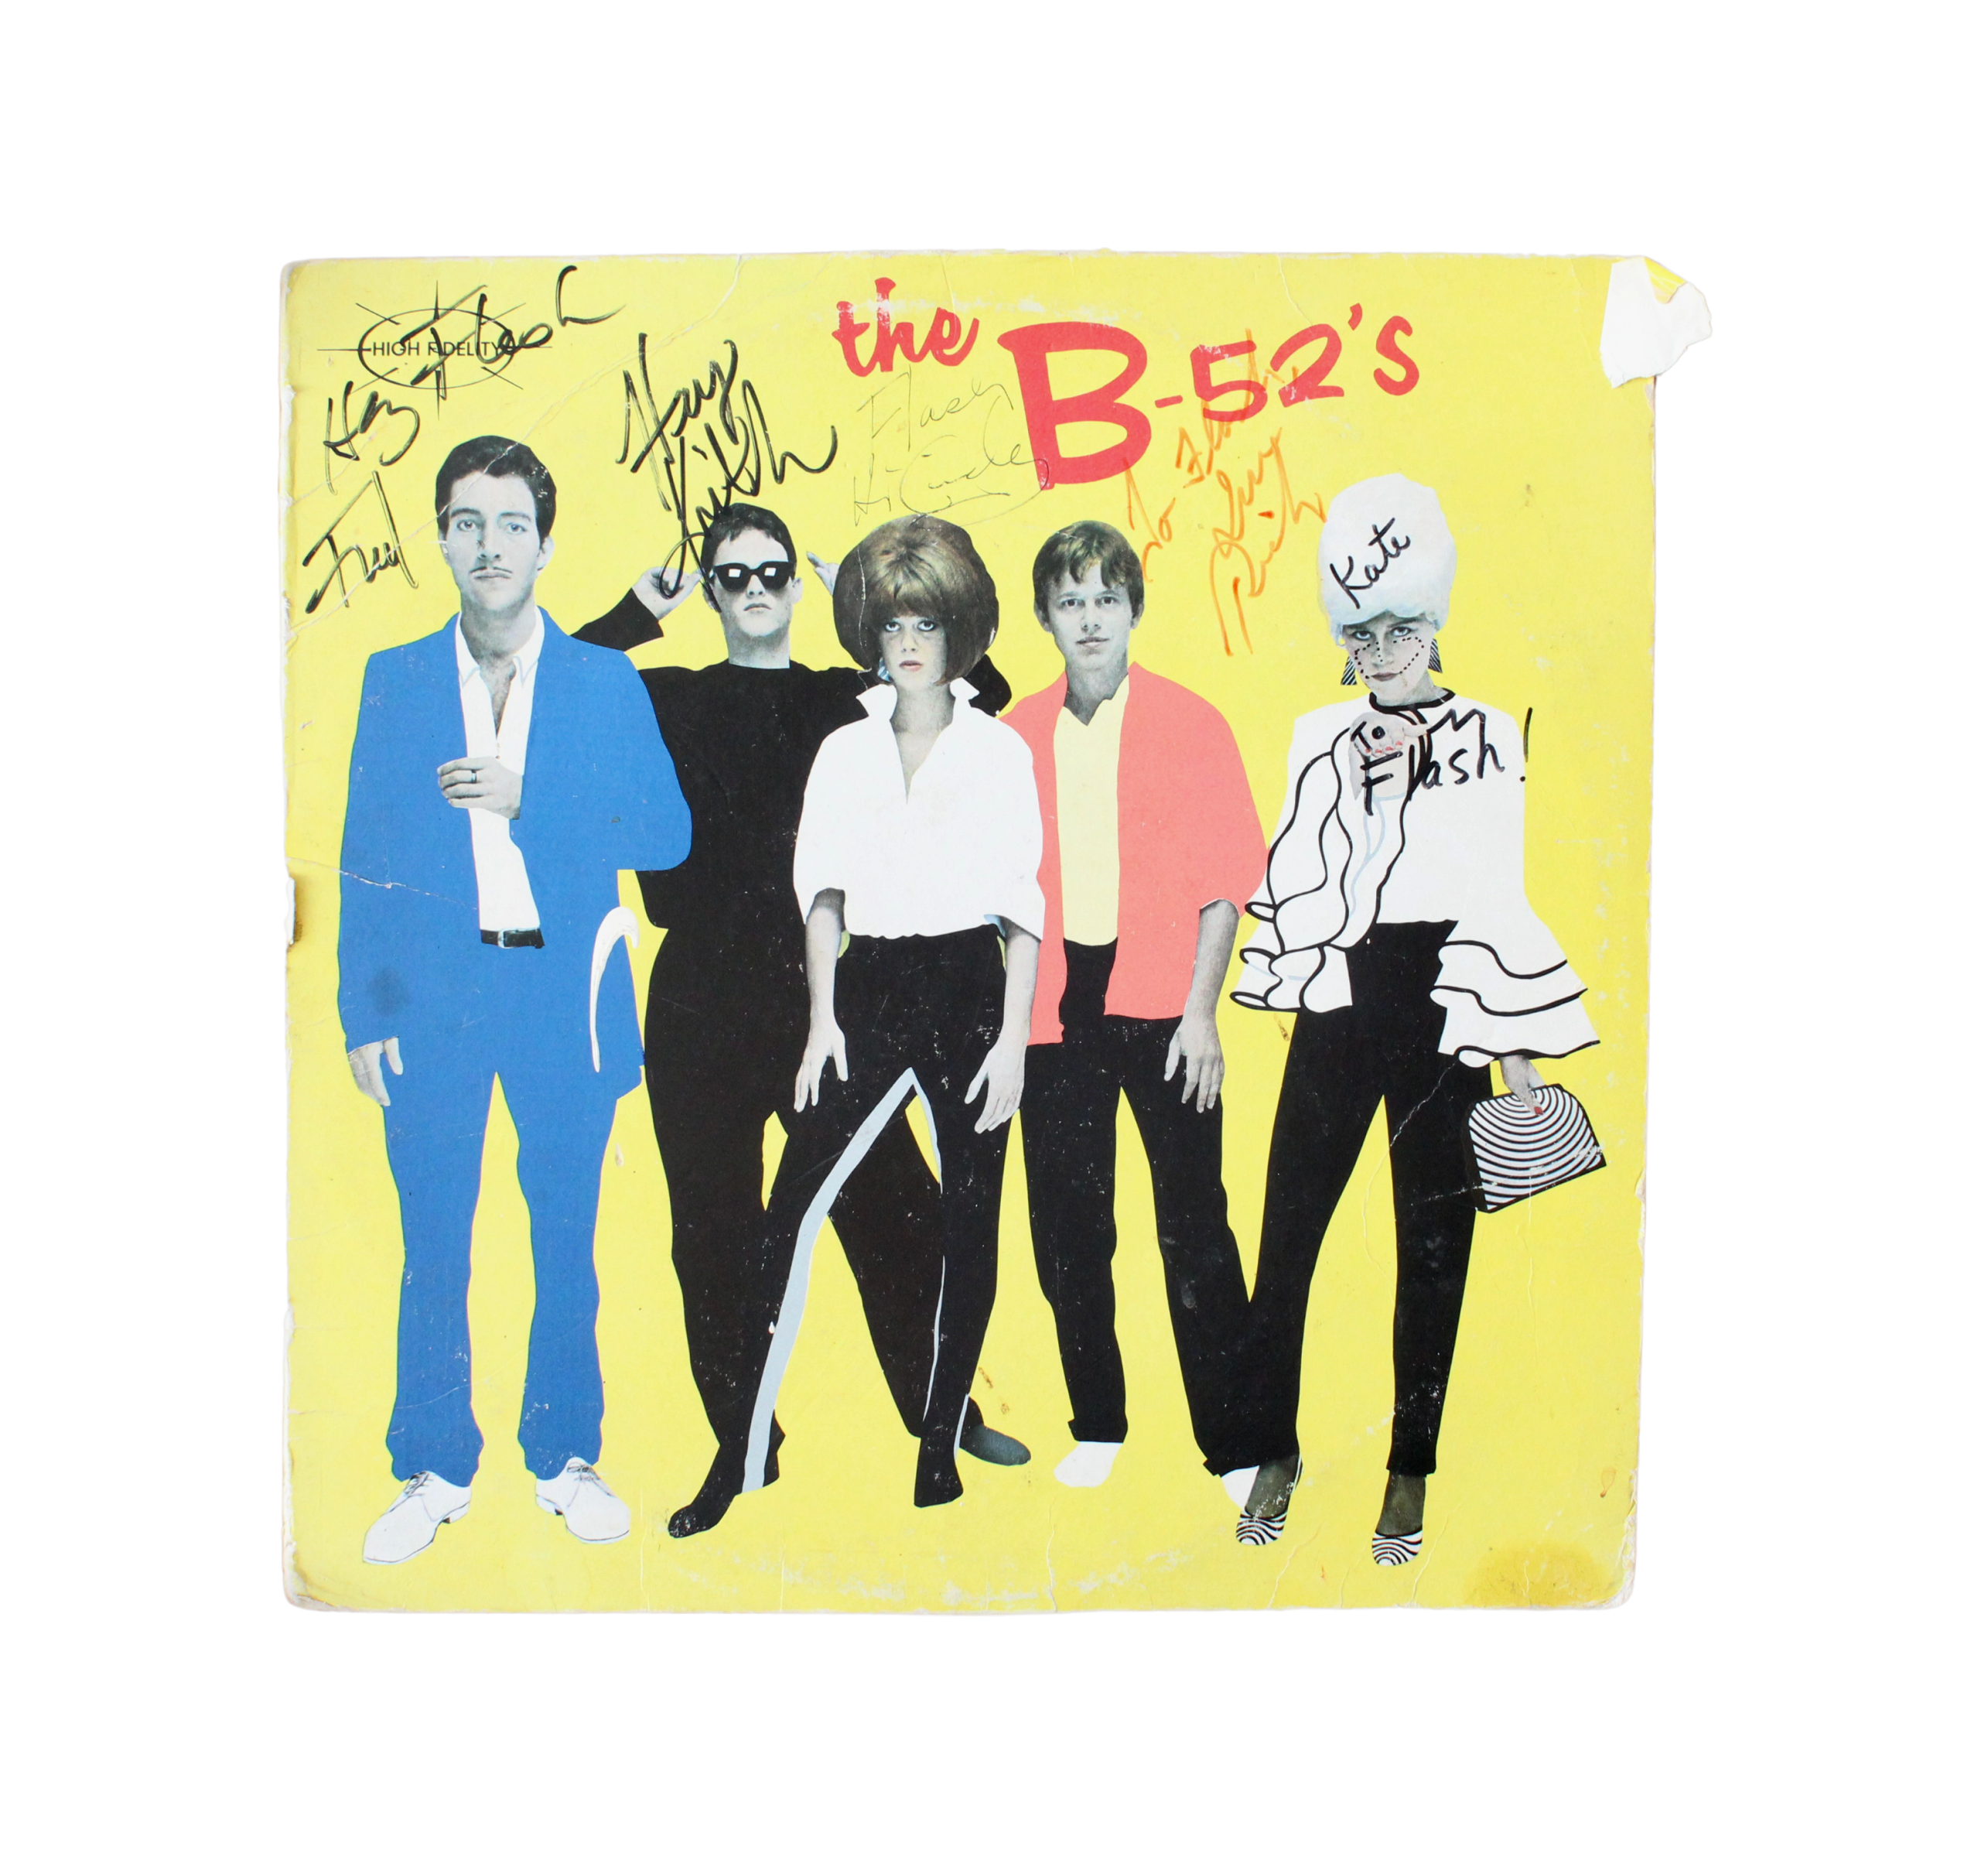 B-52's Signed Vinyl